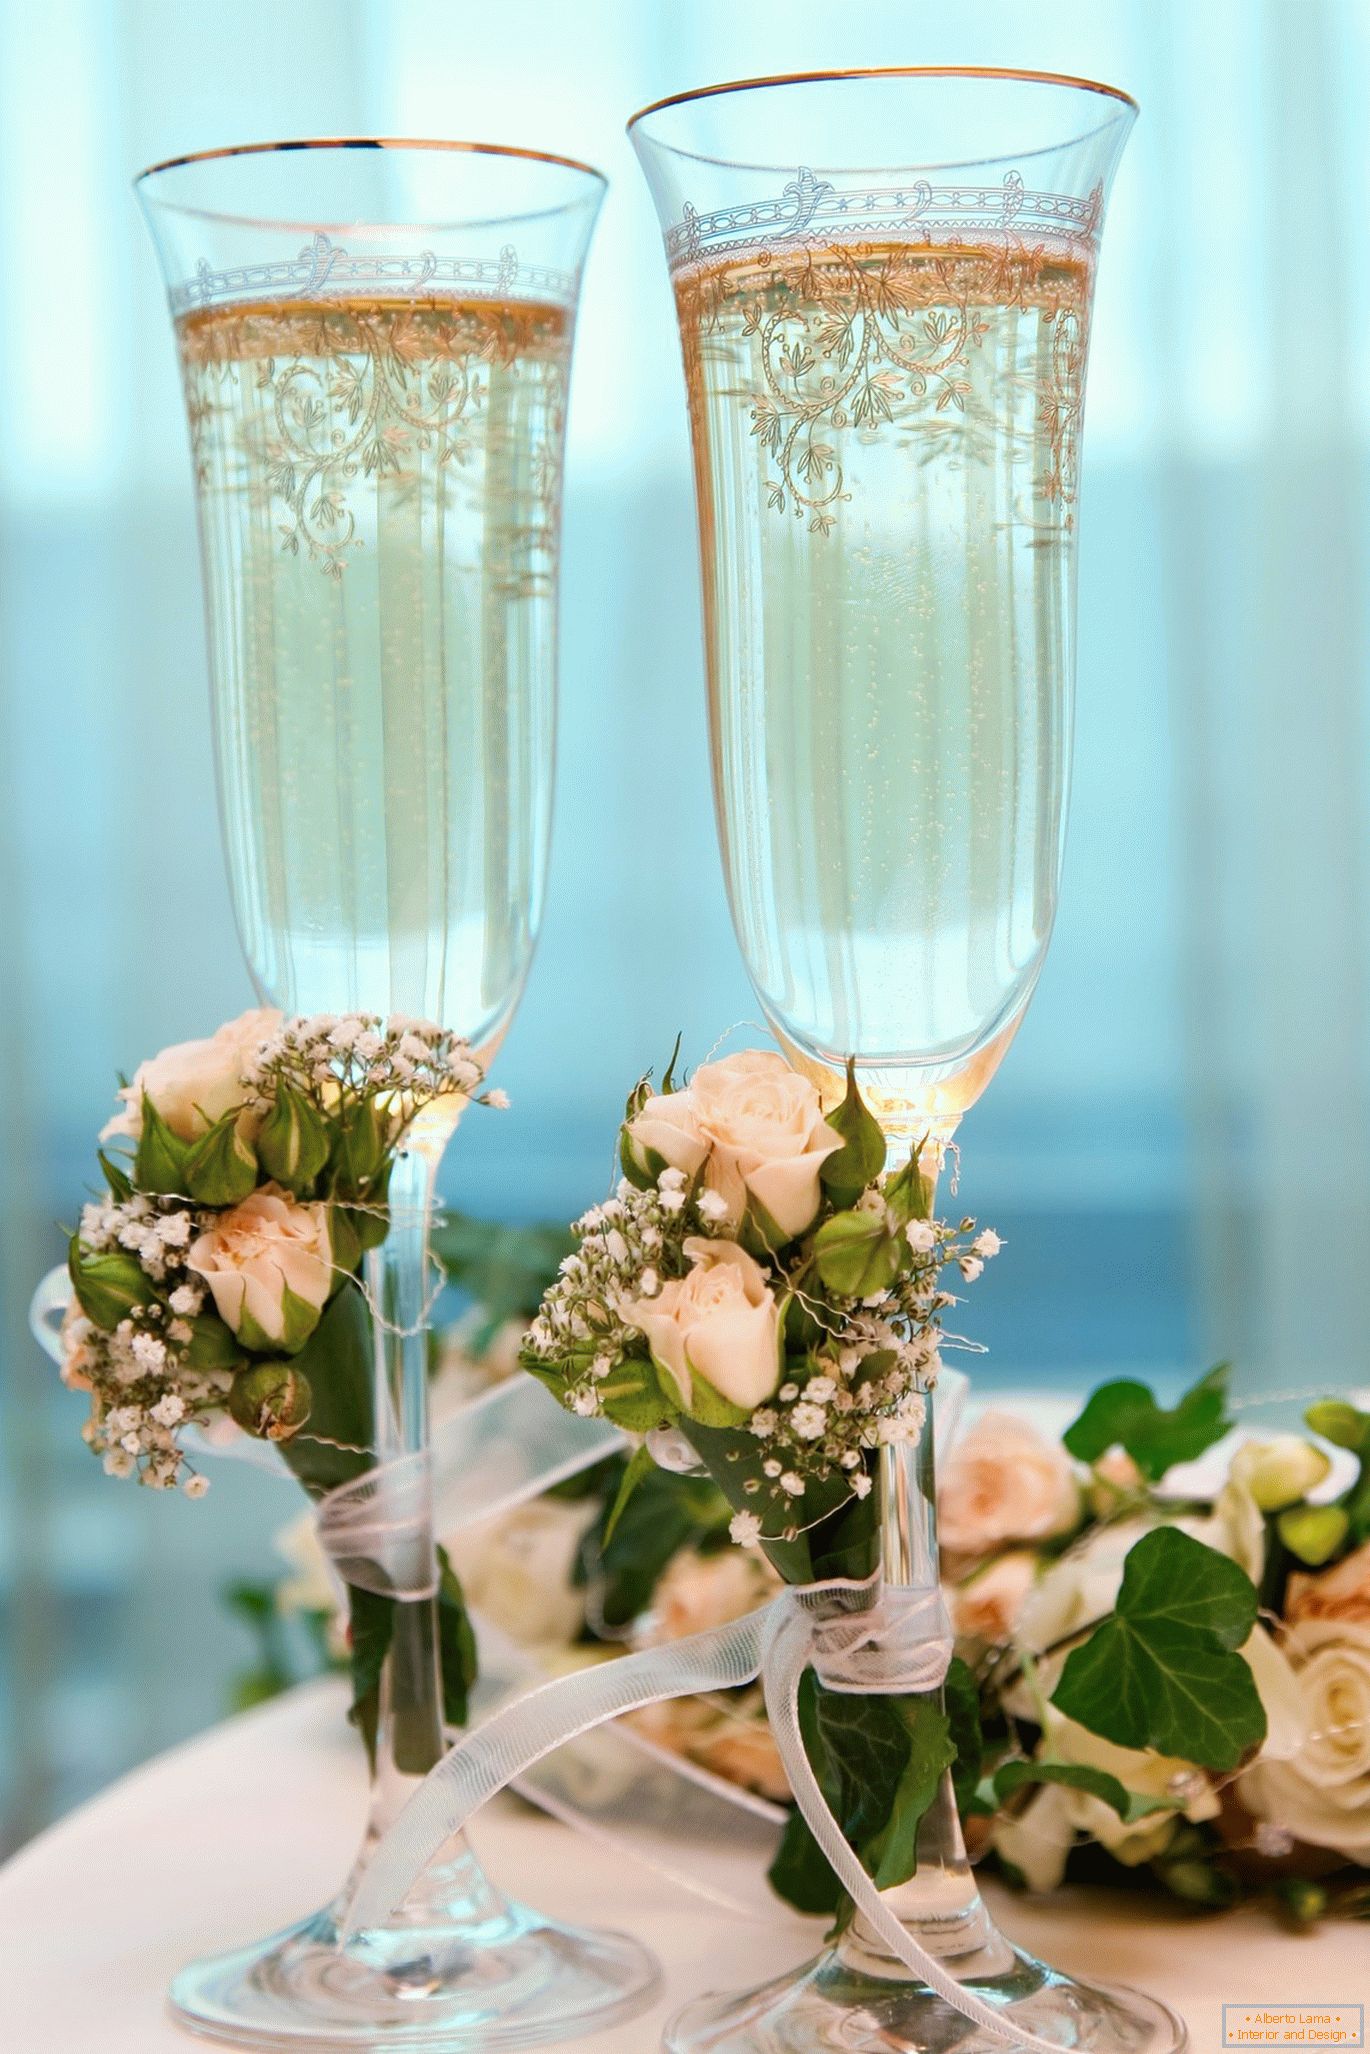 Esküvői poharak mesterséges virágokkal